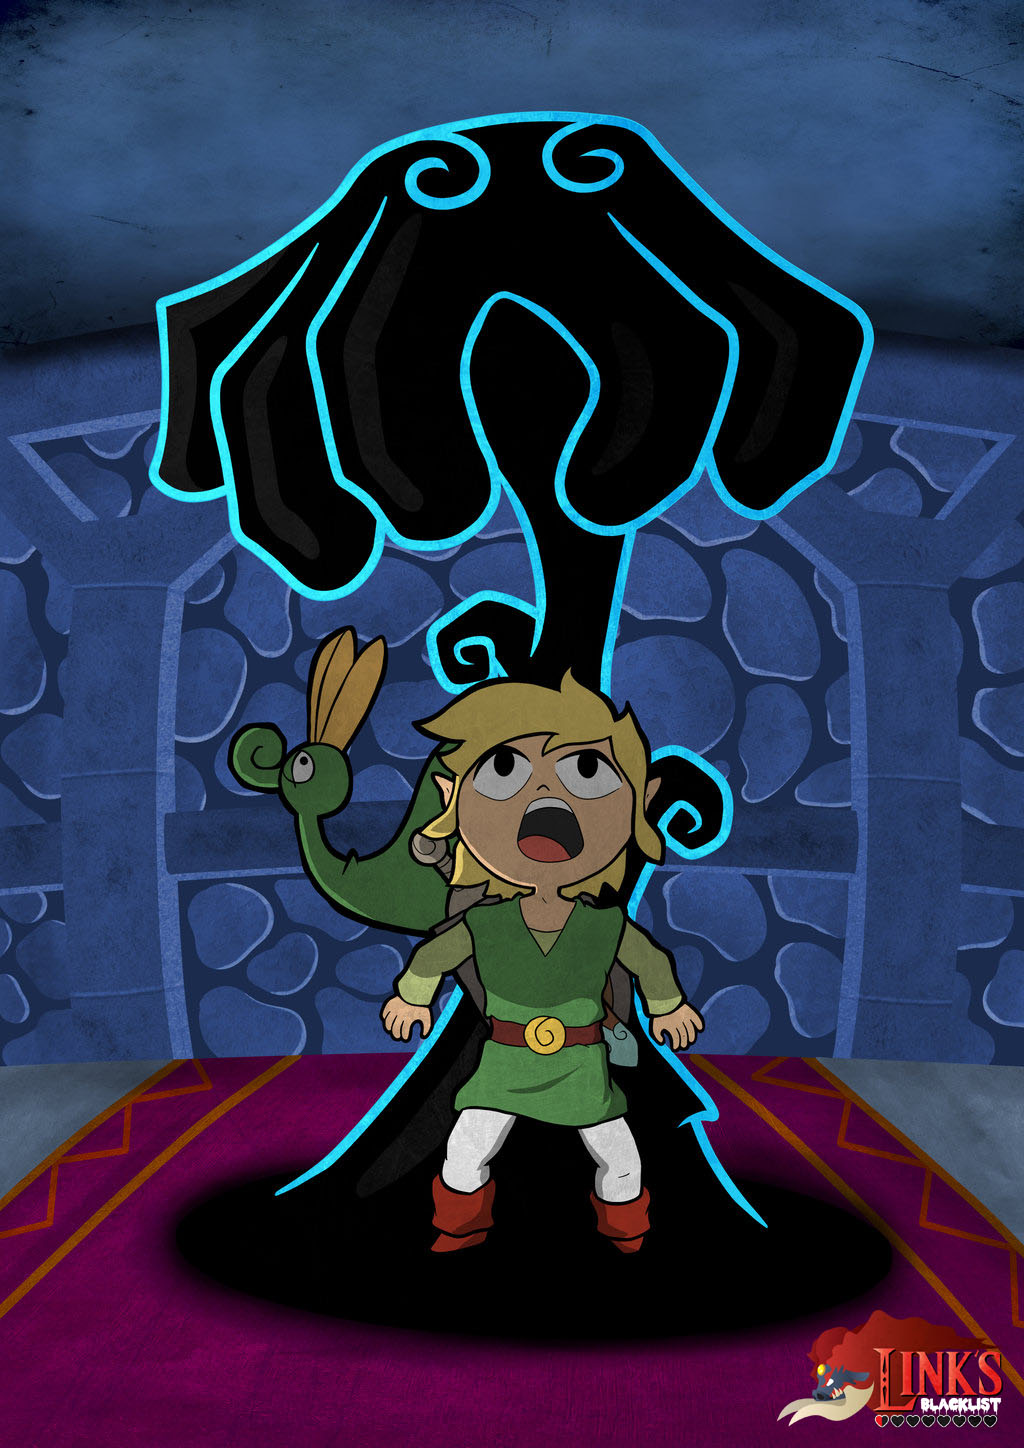 Floormaster Zelda Minish Cap for Link's Blacklist